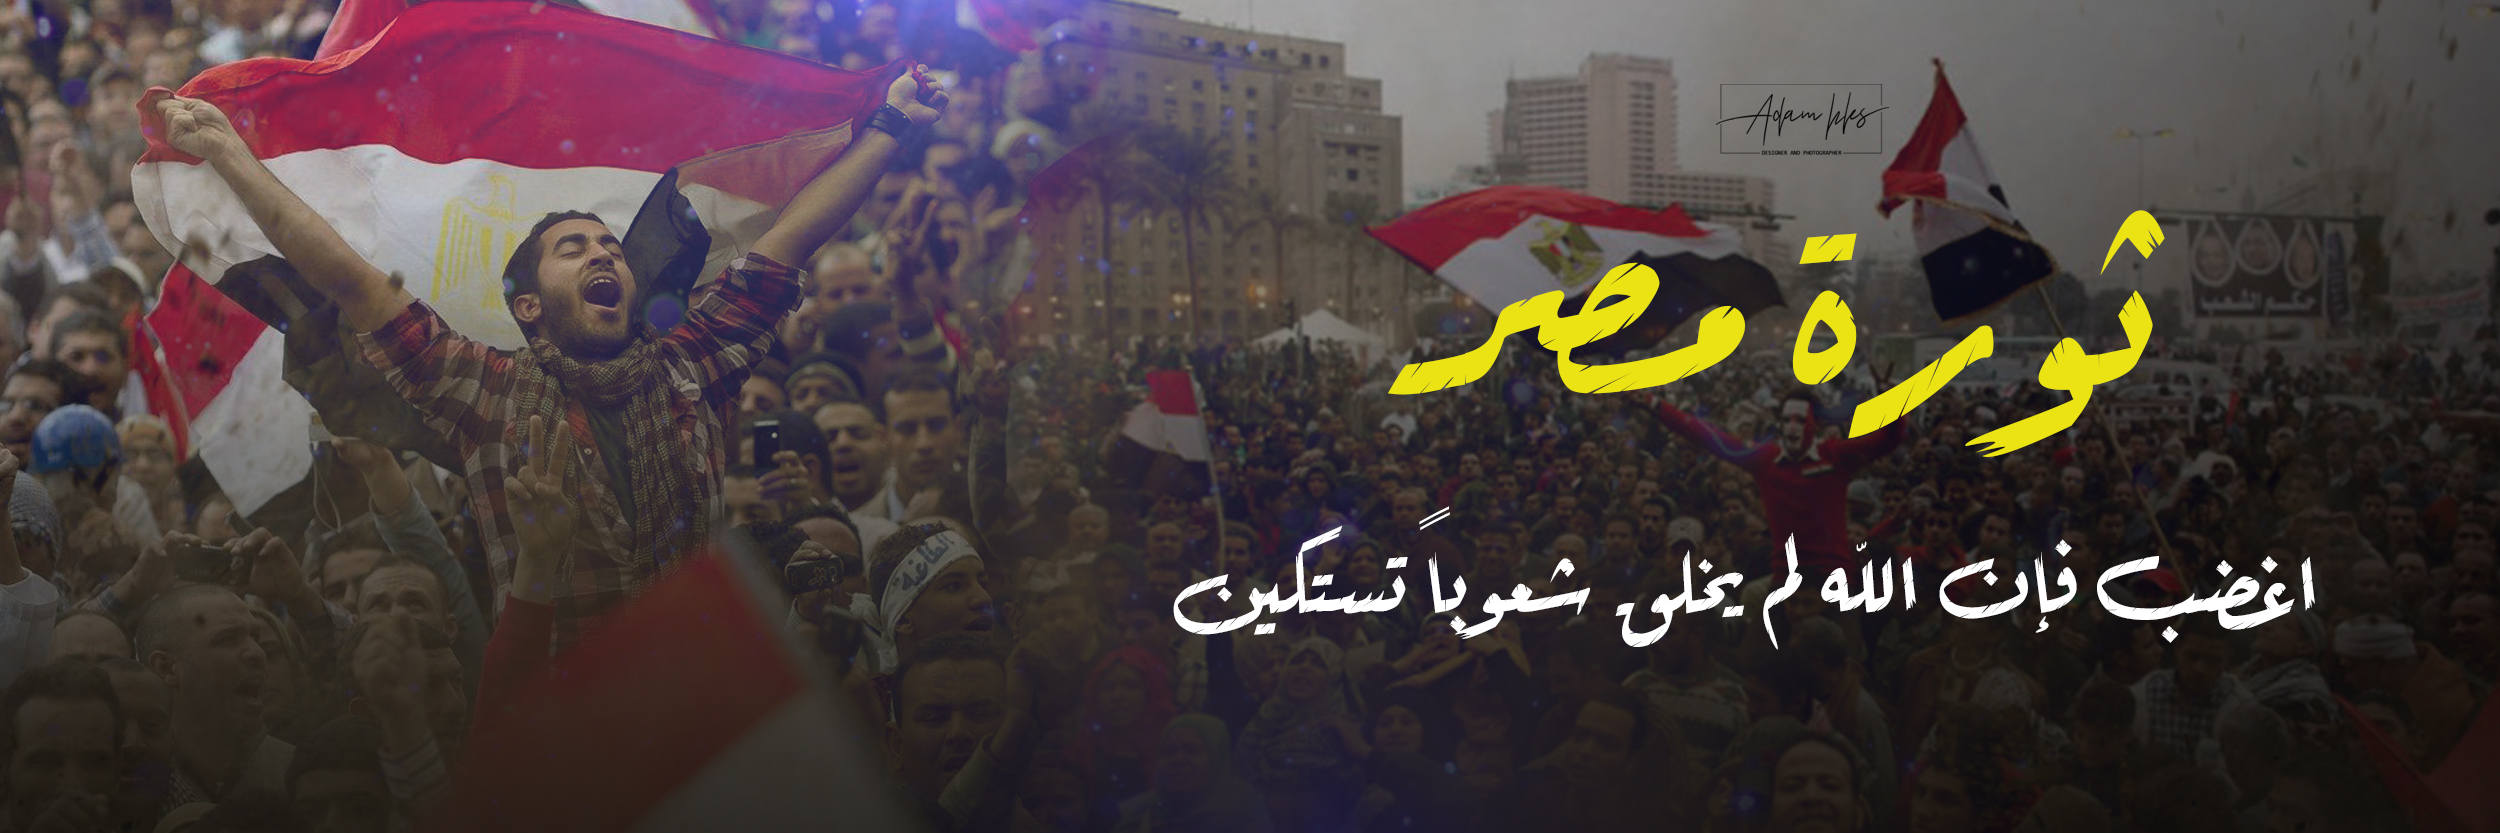 غلاف تويتر ثورة مصر 2020 اغضب فإن الله لم يخلق شعوباً تستكين